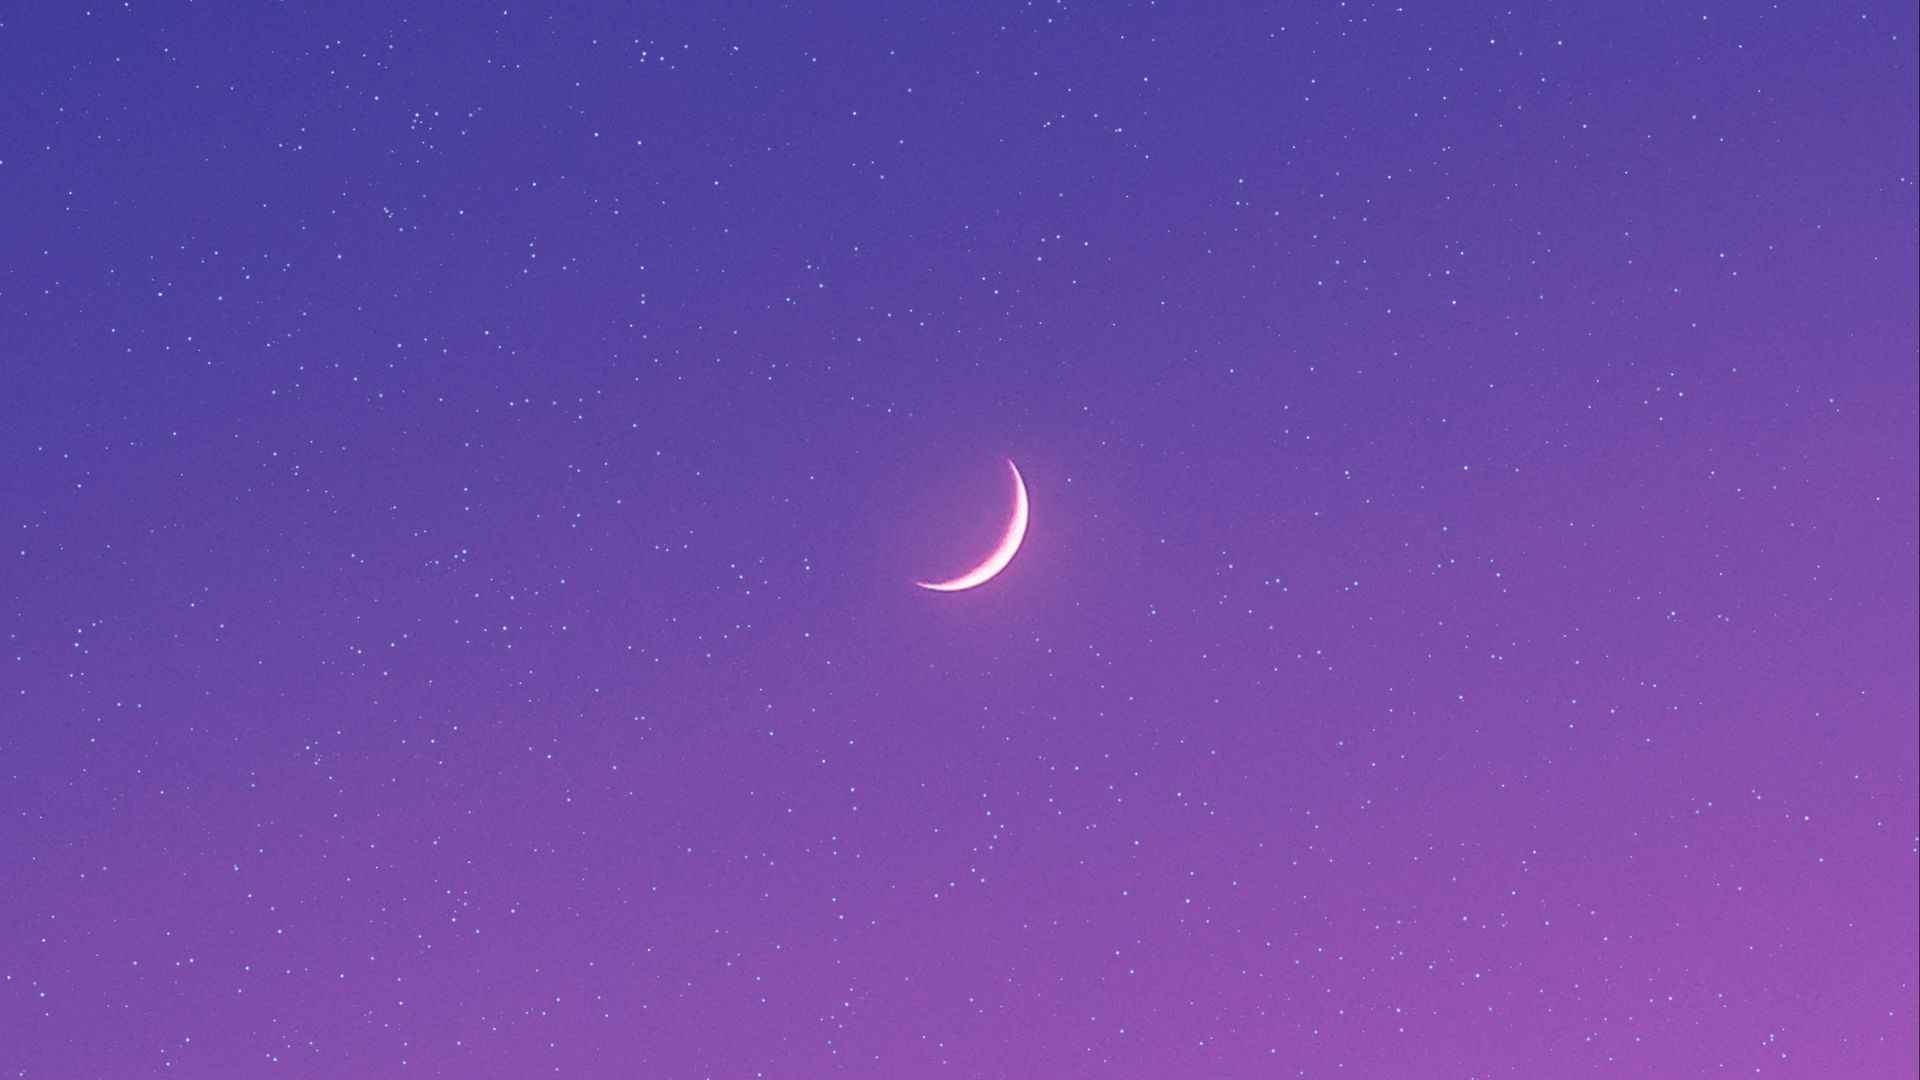 Download 1920x1080 moon, night, stars, purple wallpaper, background full hd...